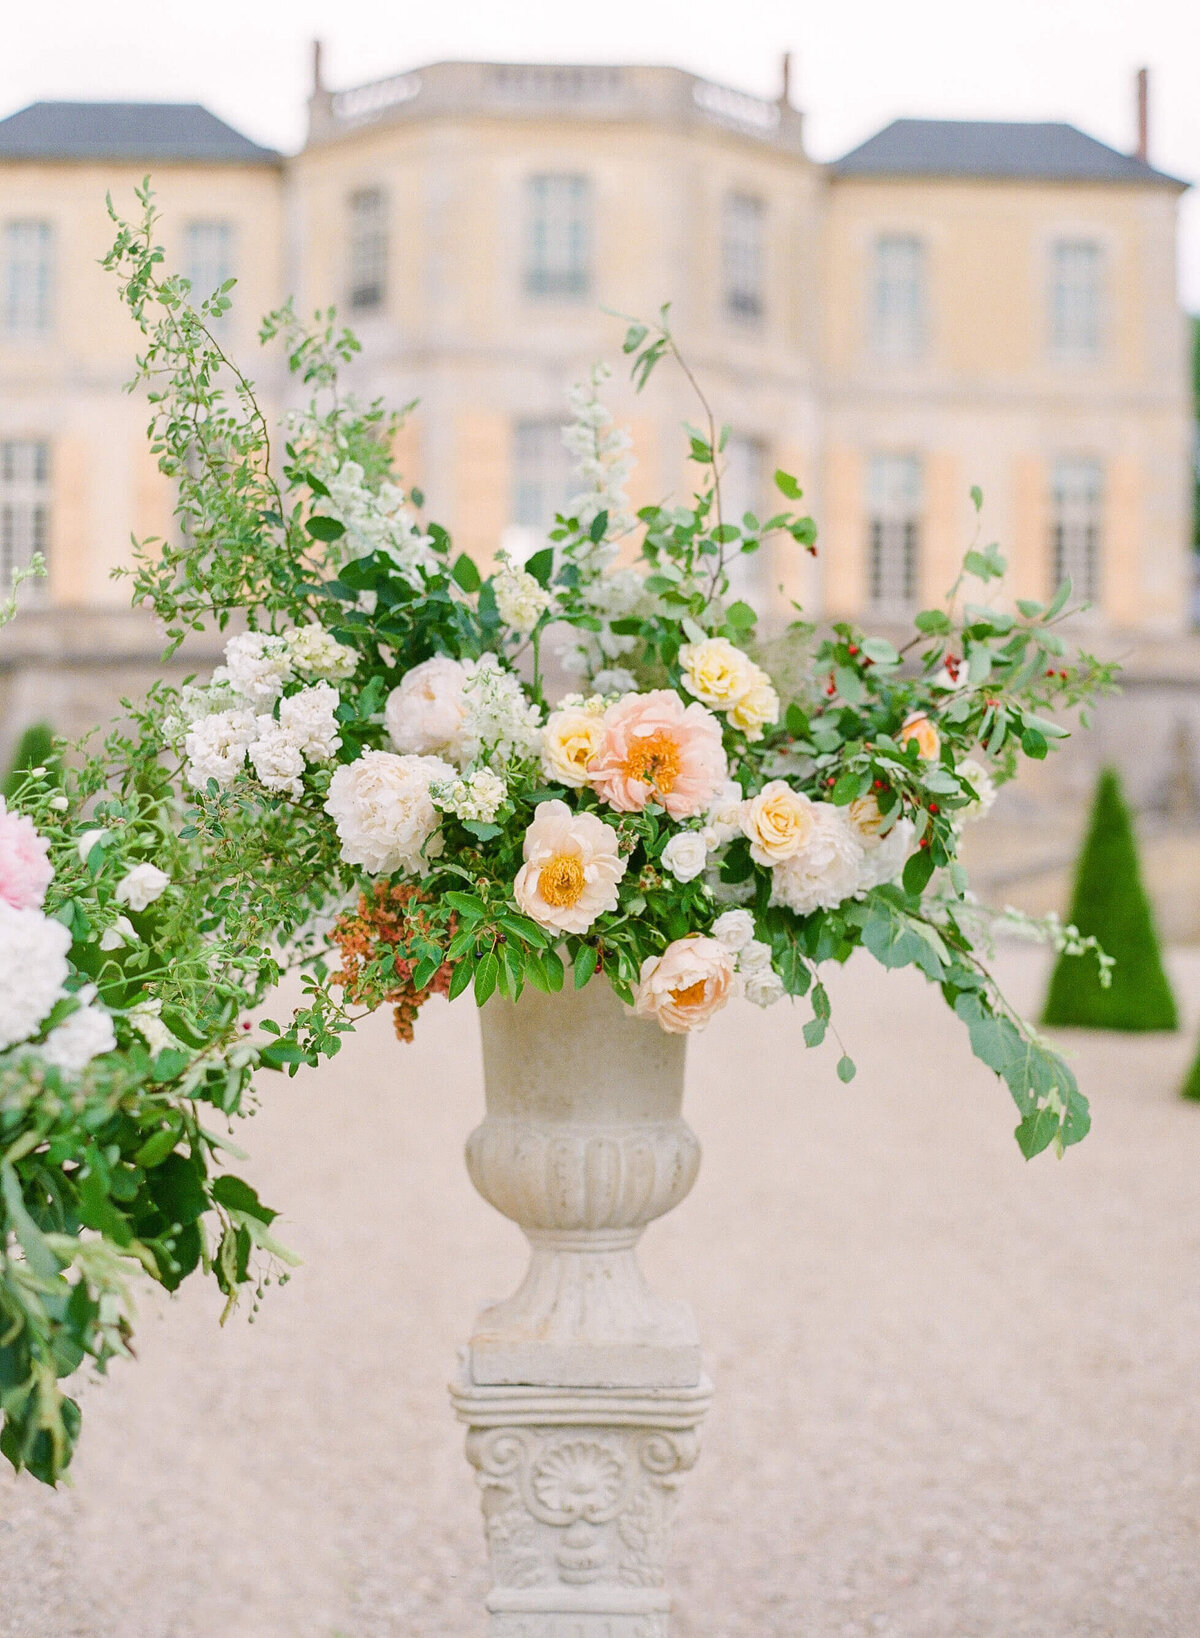 Chateau-de-Villette-wedding-florist-Floraison13